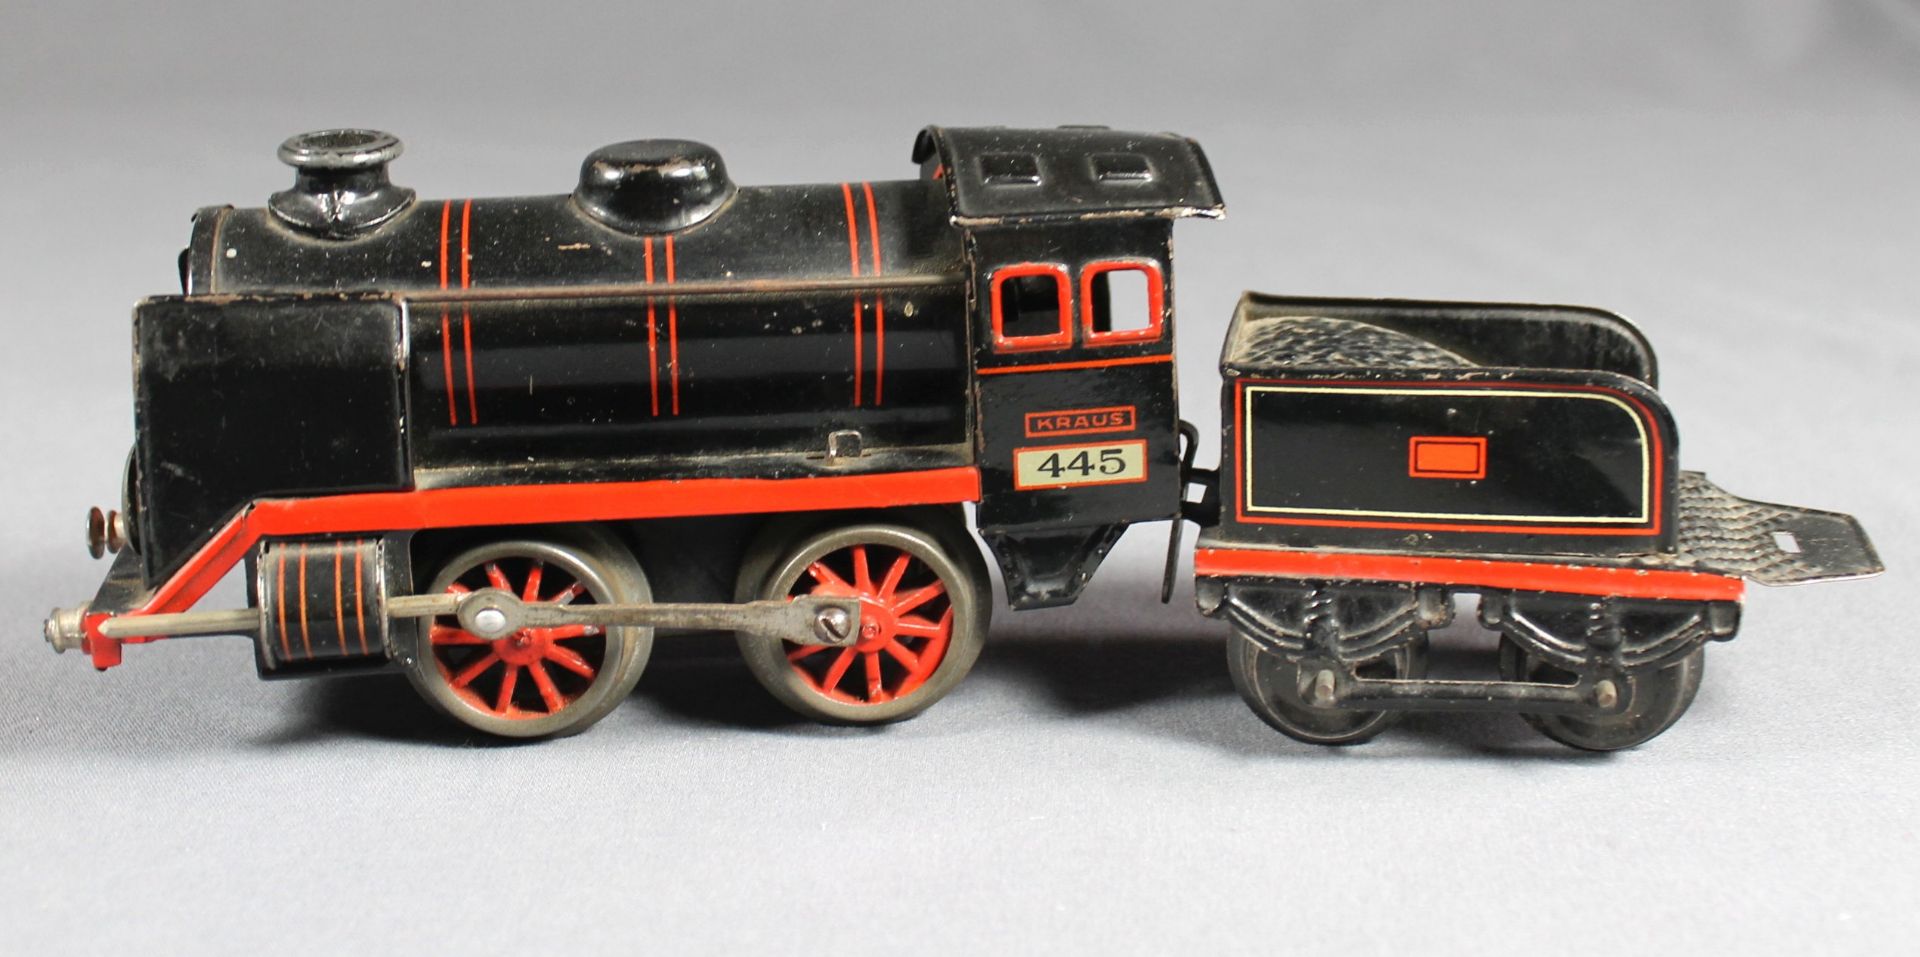 1 alte Dampflokomotive mit Uhrwerk, Funktion nicht geprüft, schwarz lithographiert, mit